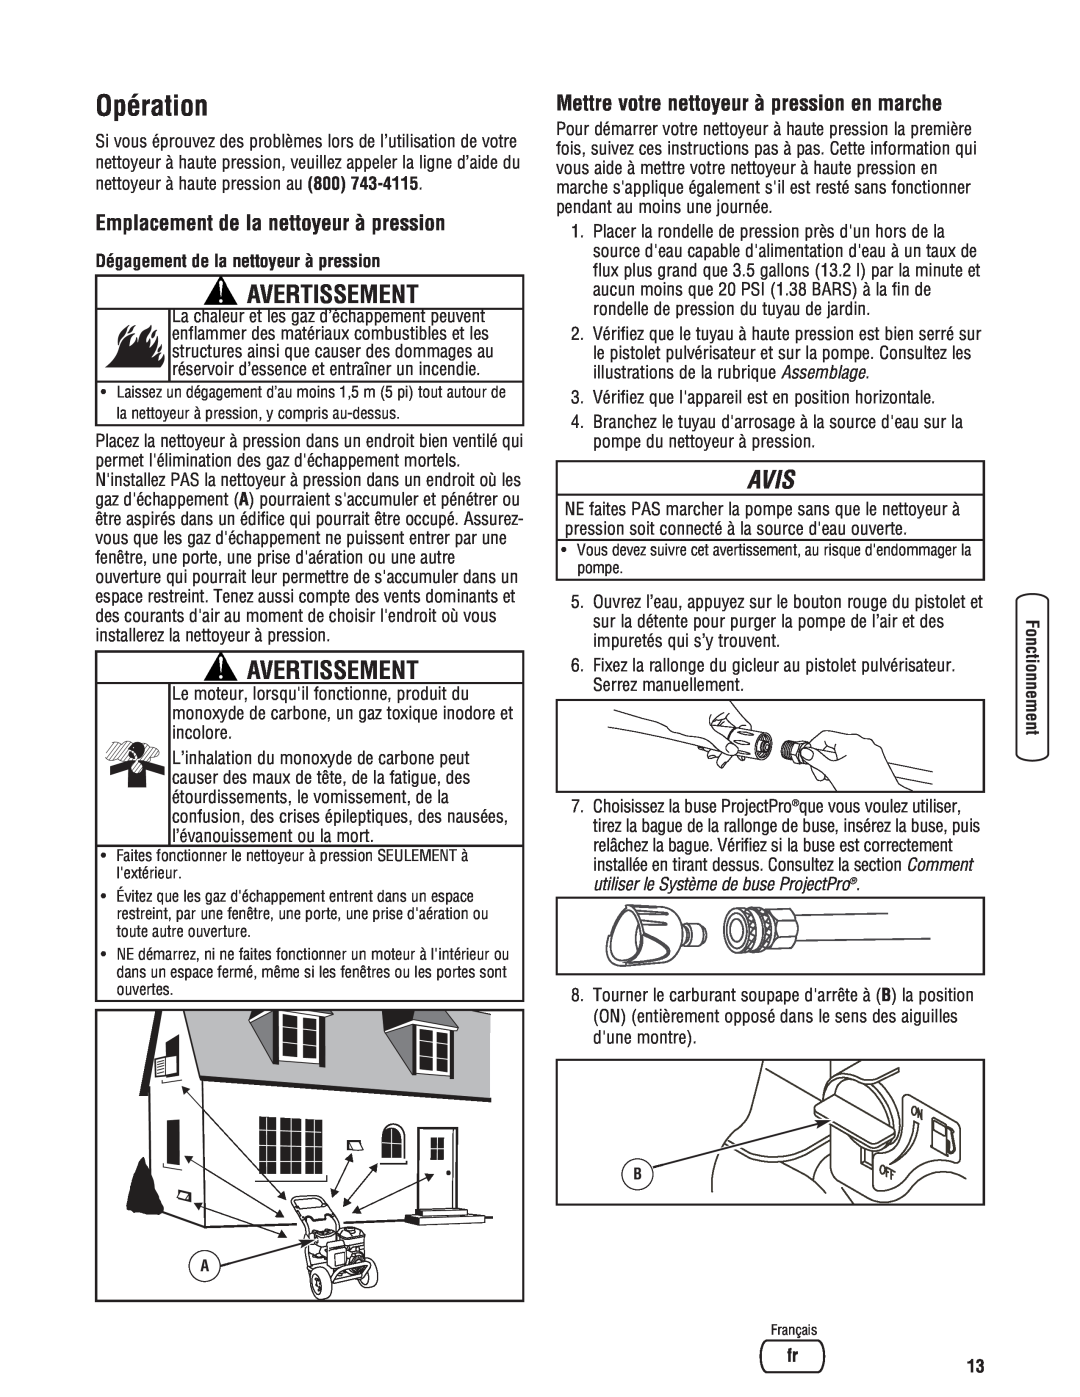 Briggs & Stratton 2900 PSI manual Opération, Avertissement, Avis, Dégagement de la nettoyeur à pression 